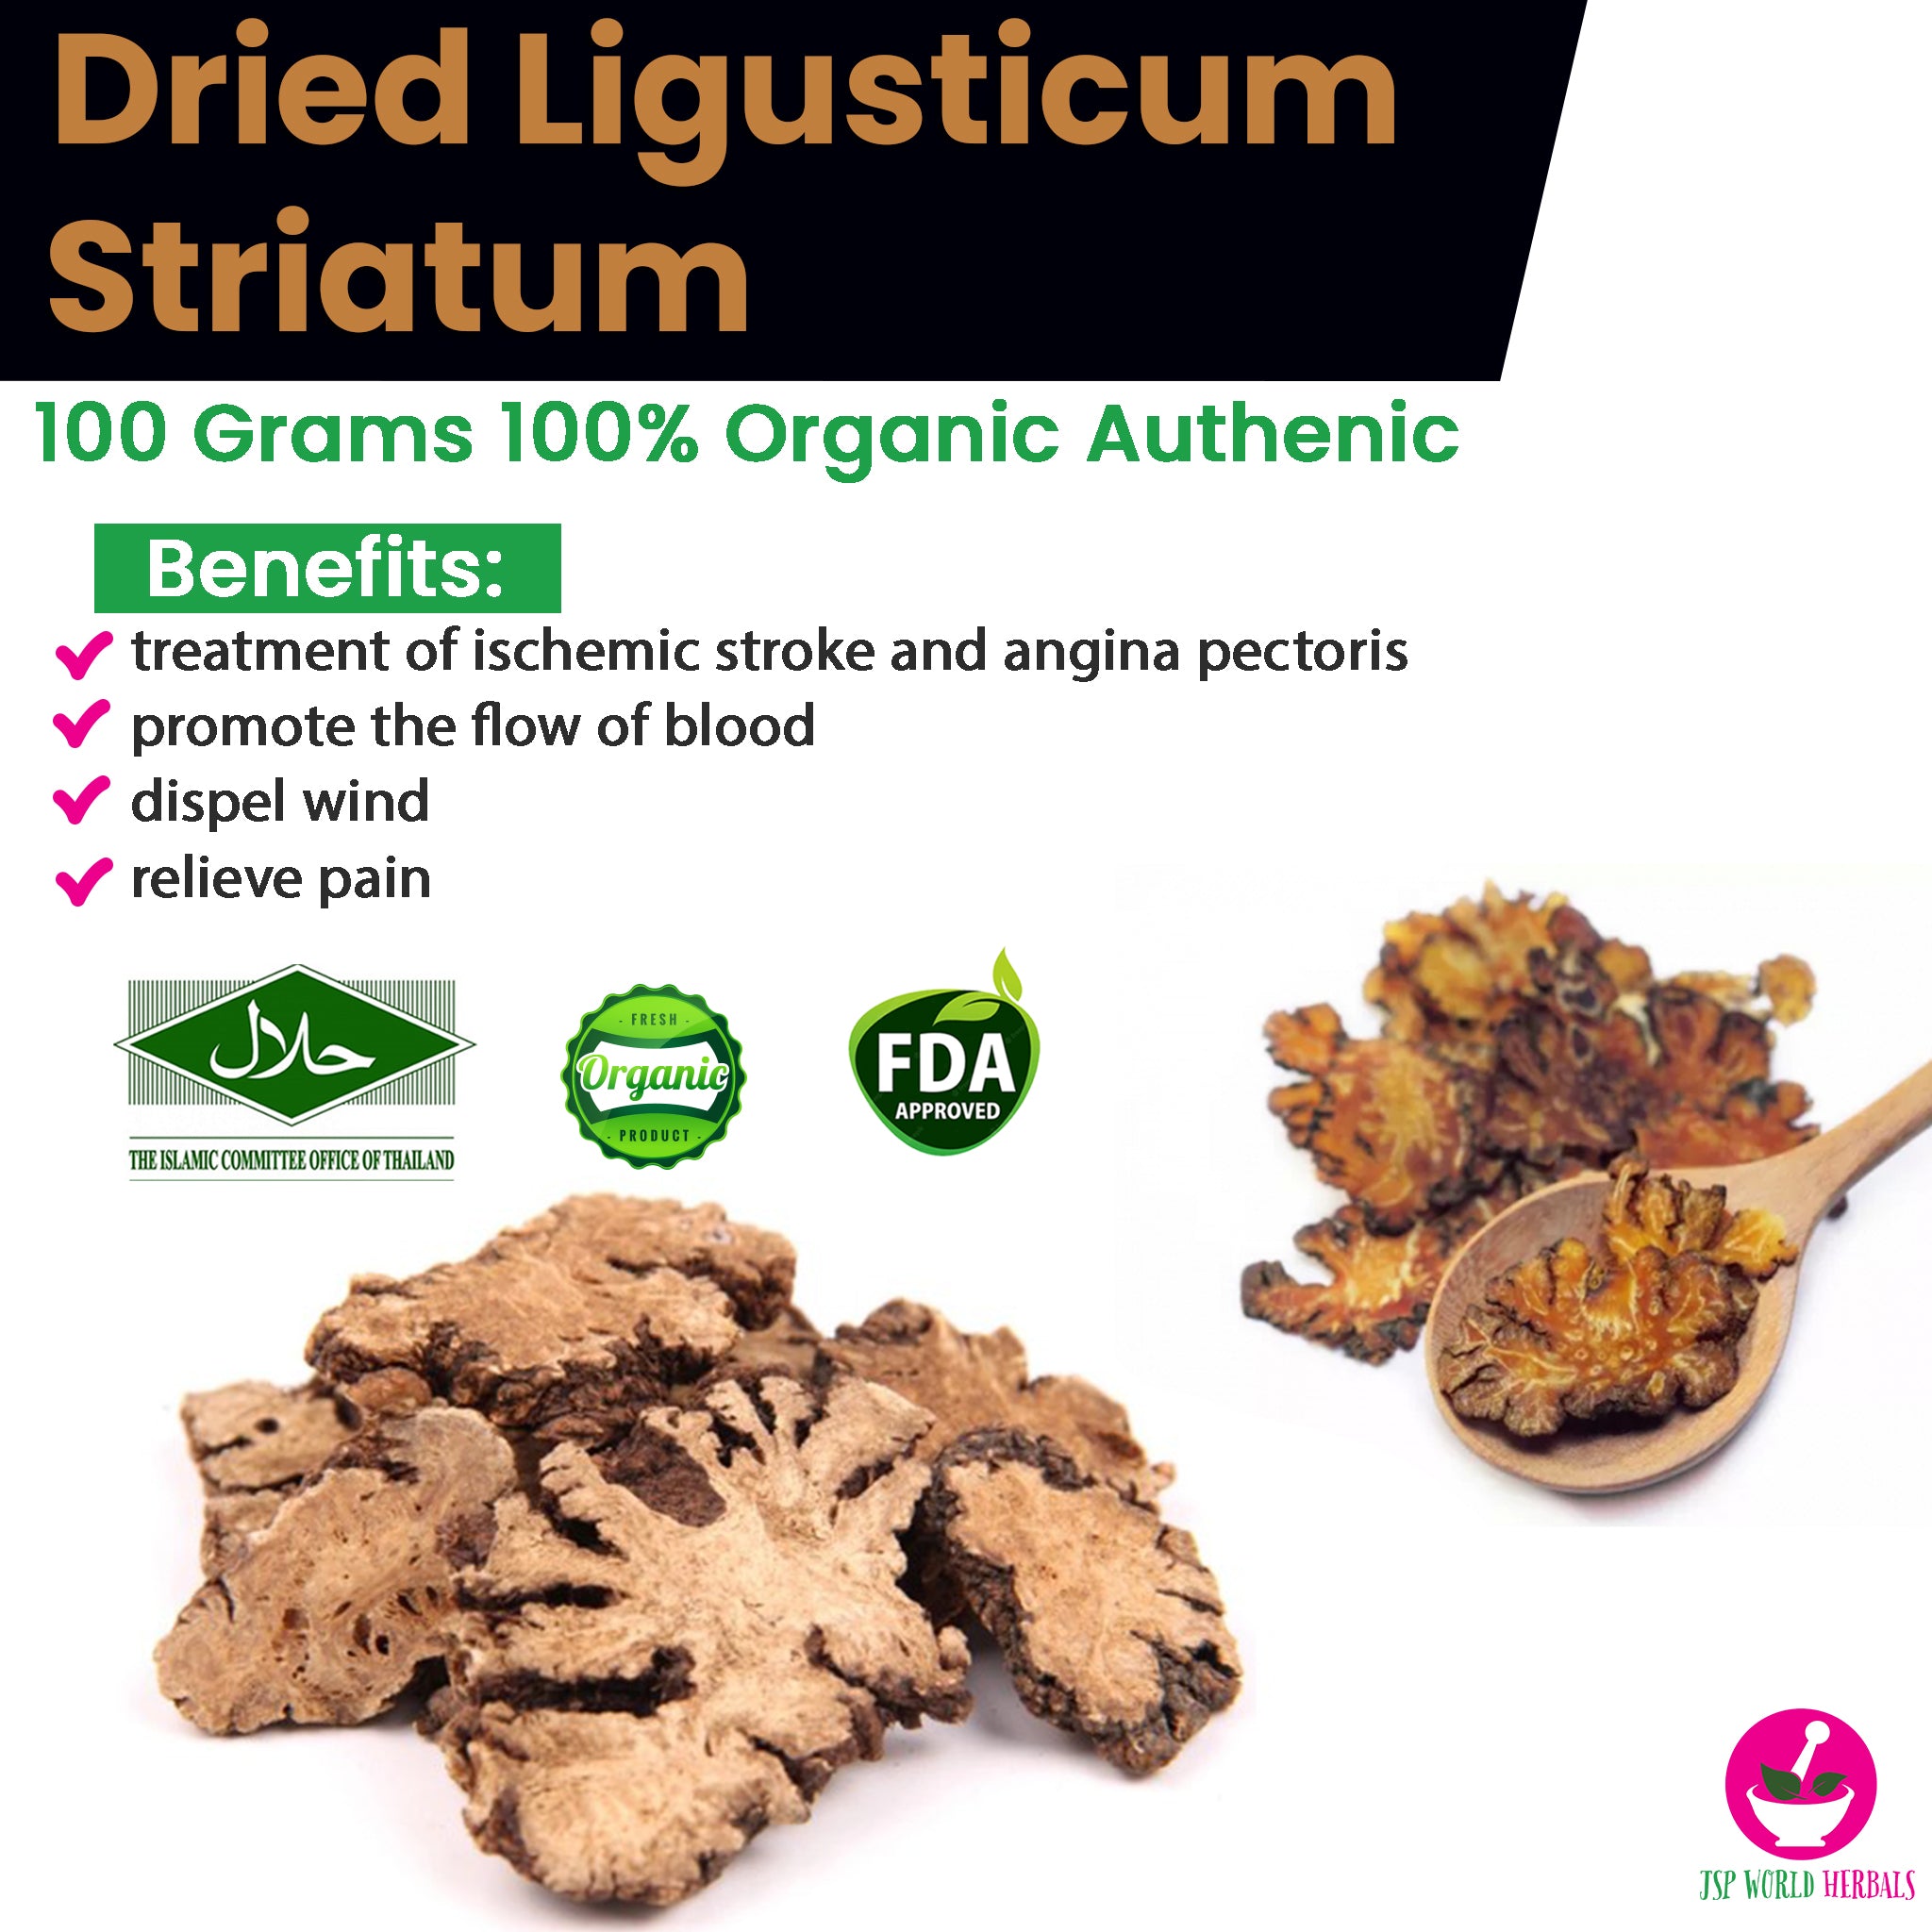 Dried Ligusticum striatum 100 Grams 100% Organic AuthenicDried Ligusticum striatum 100 Grams 100% Organic Authenic